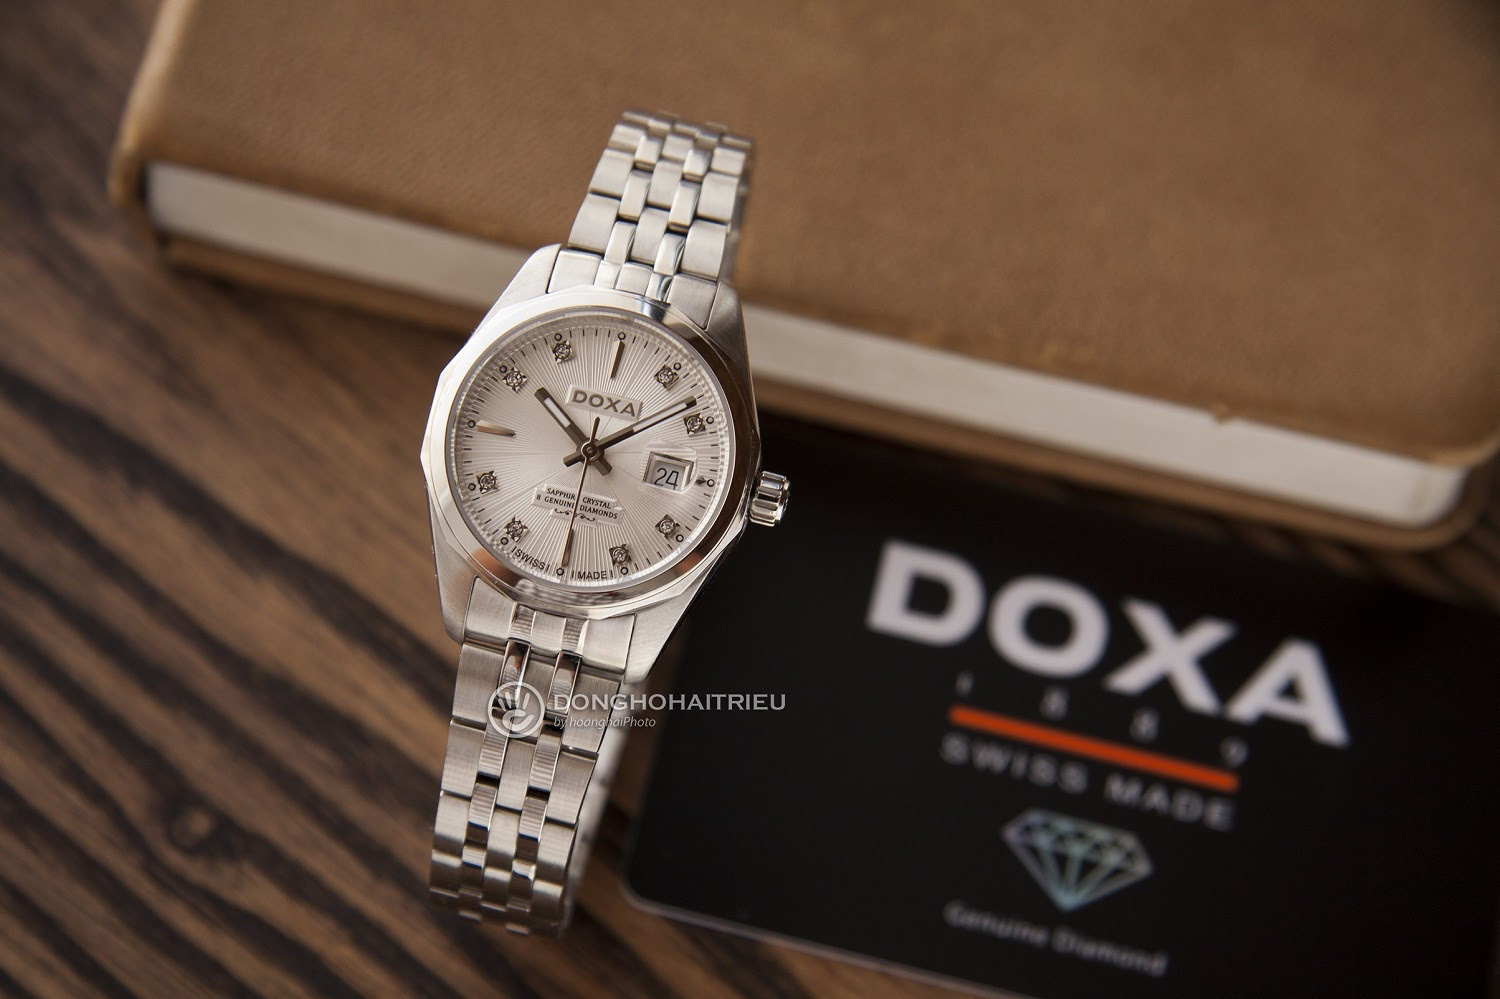 Đồng hồ Doxa - Đánh giá chi tiết và phân biệt chính hãng